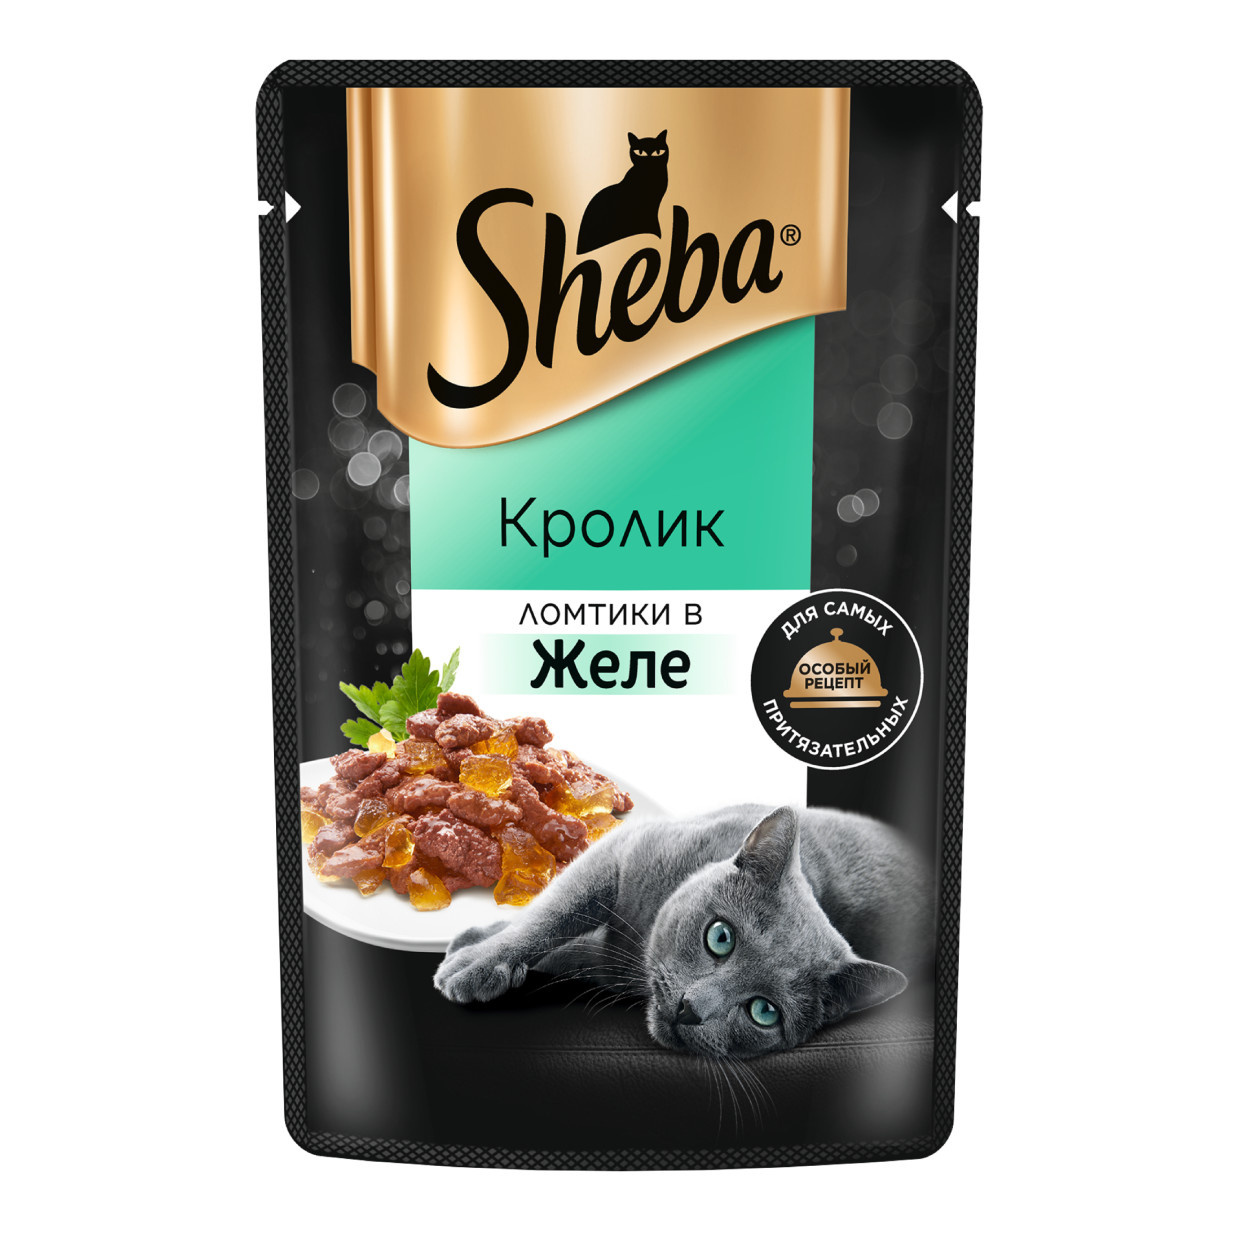 Sheba влажный корм для кошек «Ломтики в желе с кроликом» (75 г)